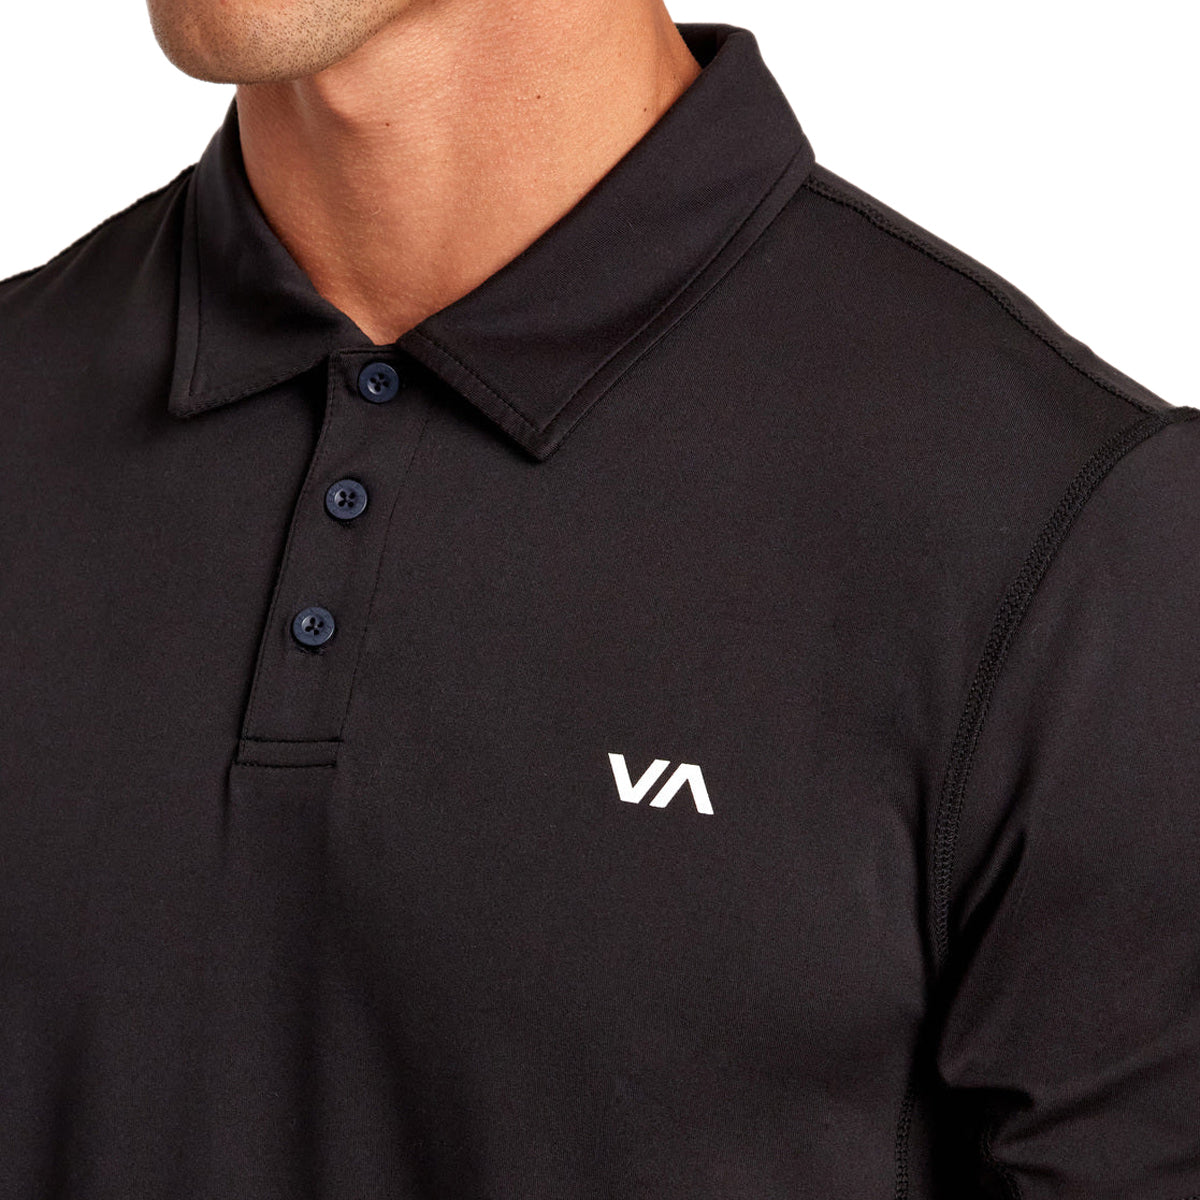 RVCA Sport Vent Polo Shirt - Black image 4